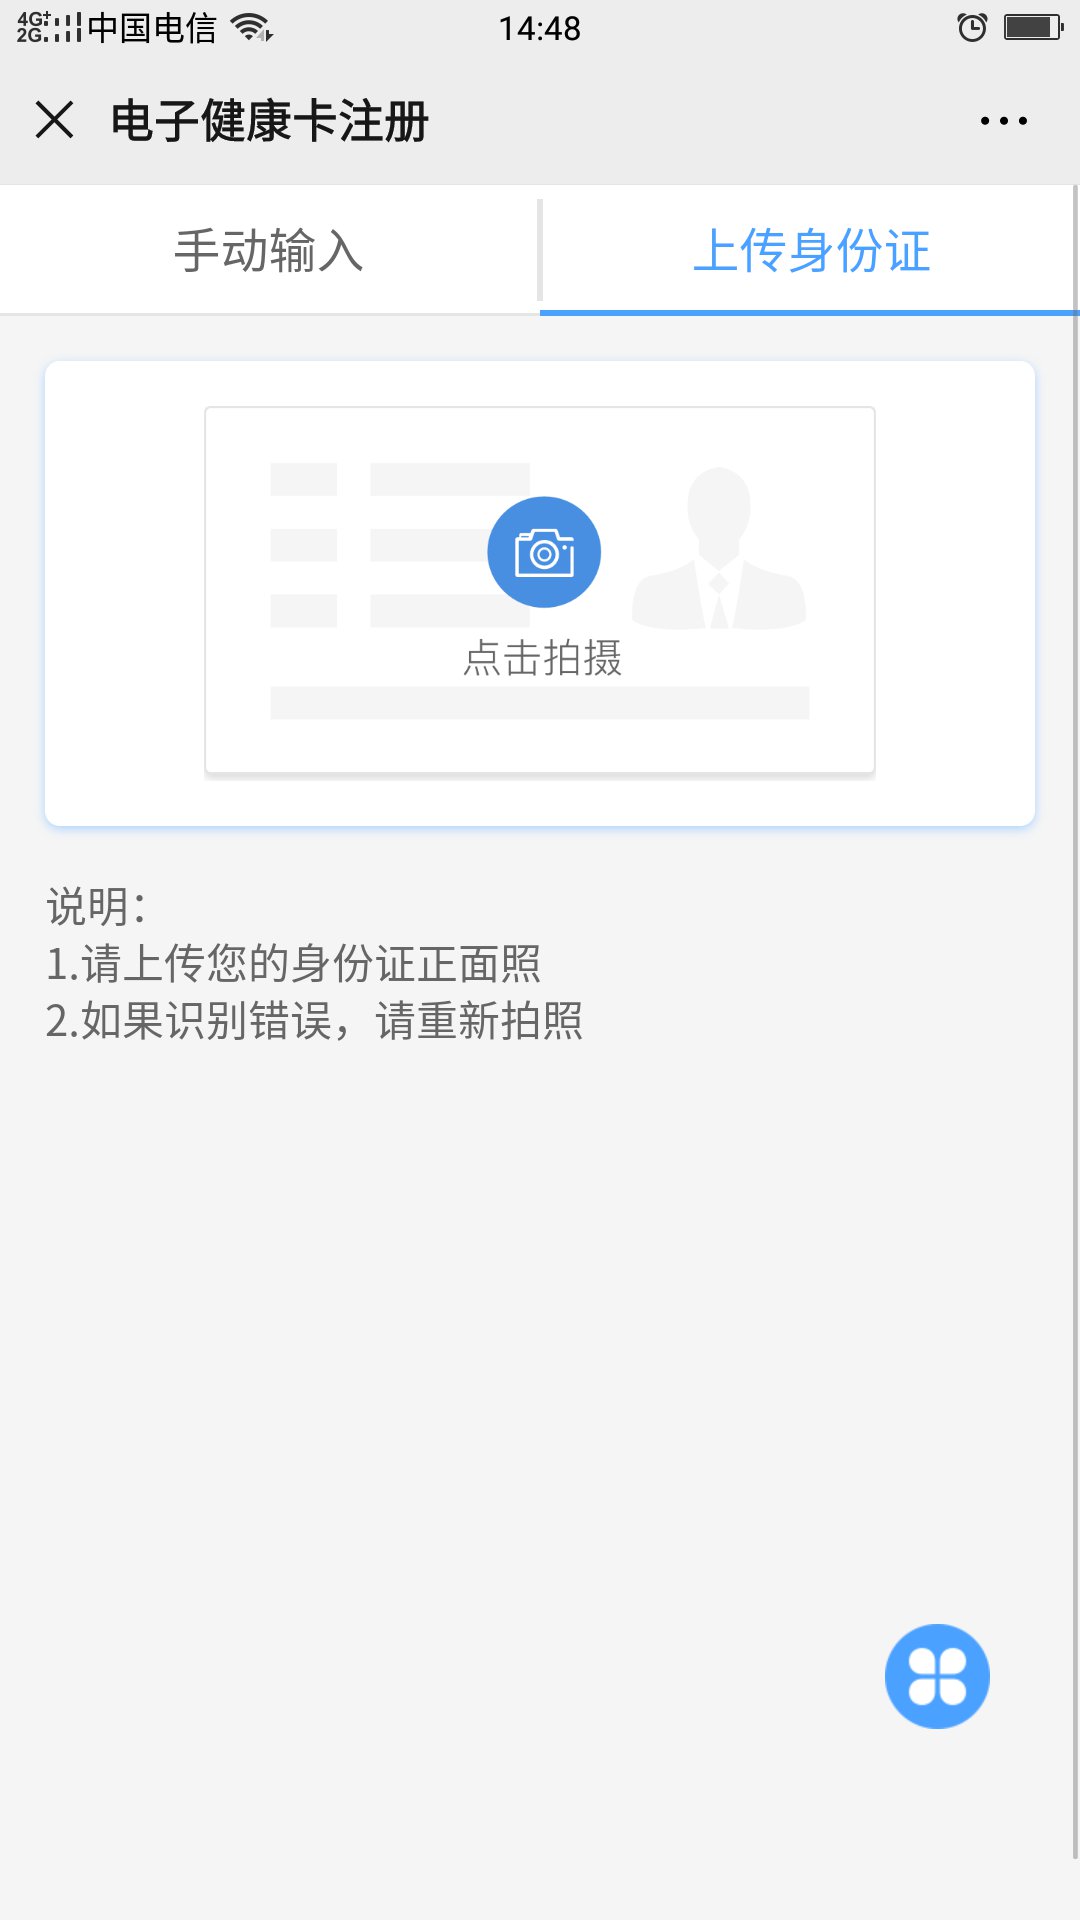 四川省医院电子健康卡线上申领流程